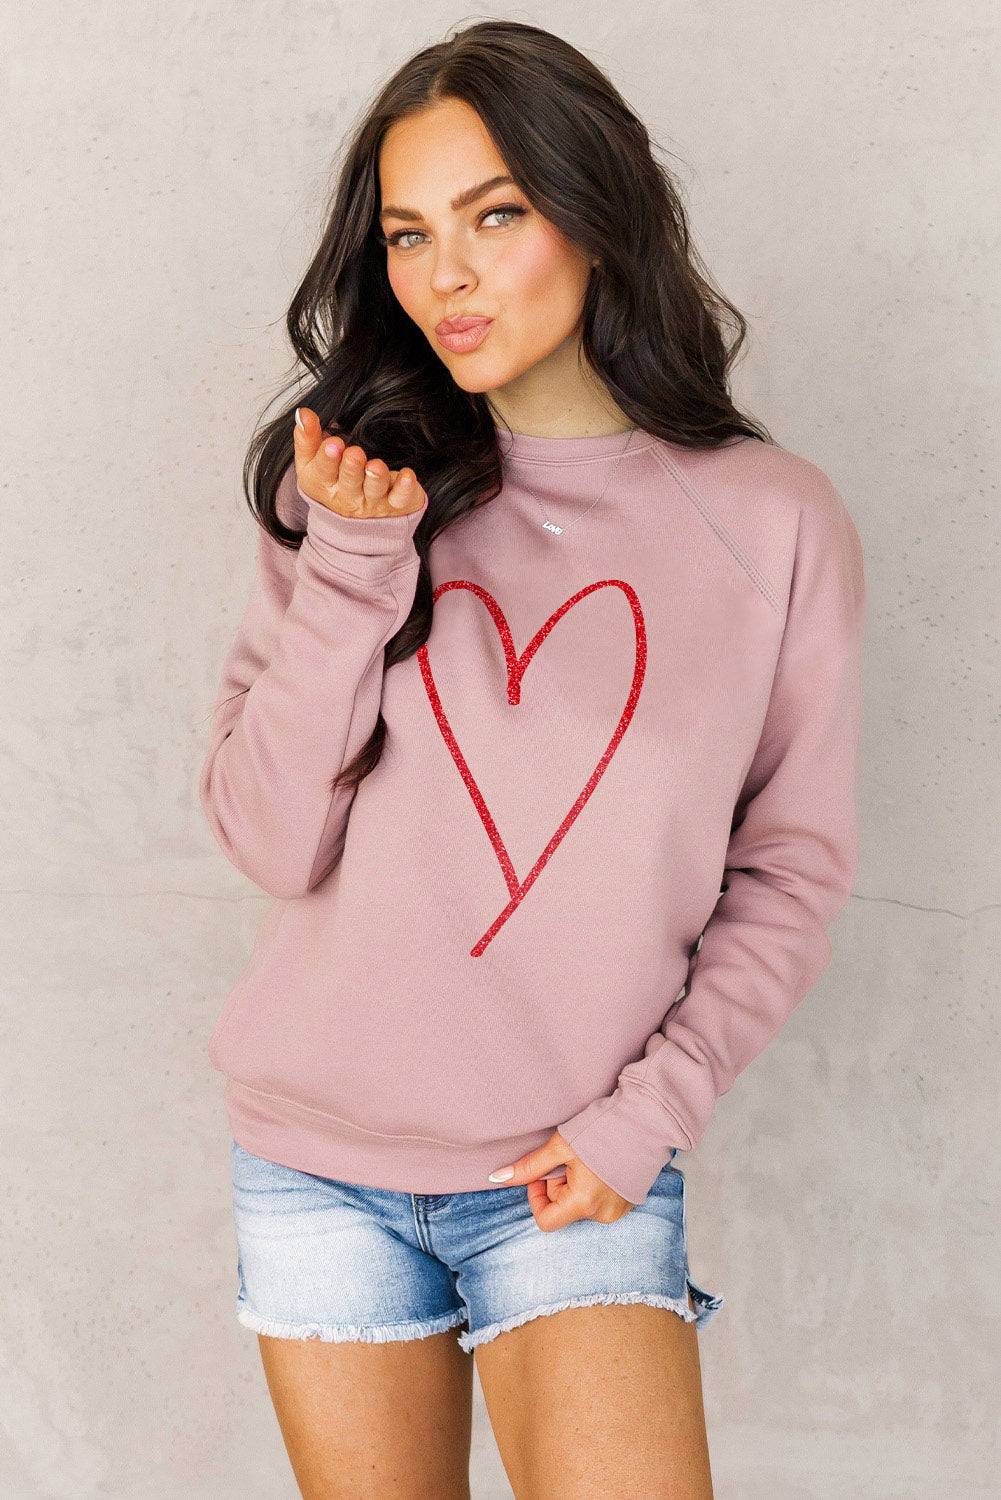 Pink Heart Glitter Graphic Raglan Pullover Sweatshirt Graphic Sweatshirts JT's Designer Fashion